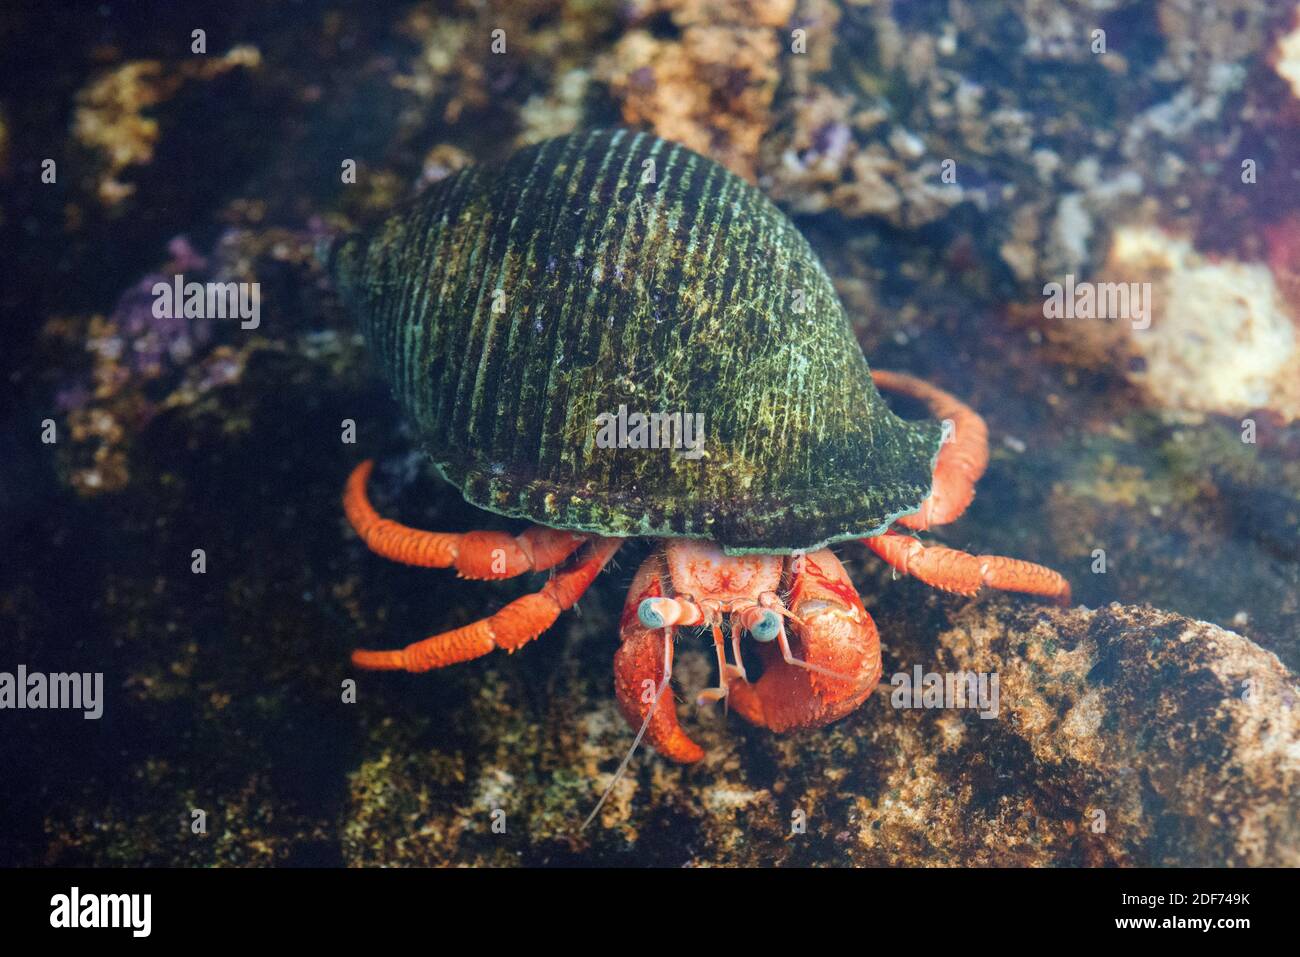 Il granchio mediterraneo eremita (Dardanus arrosor) è un predatore e scavenger di crostacei marini. Foto Stock